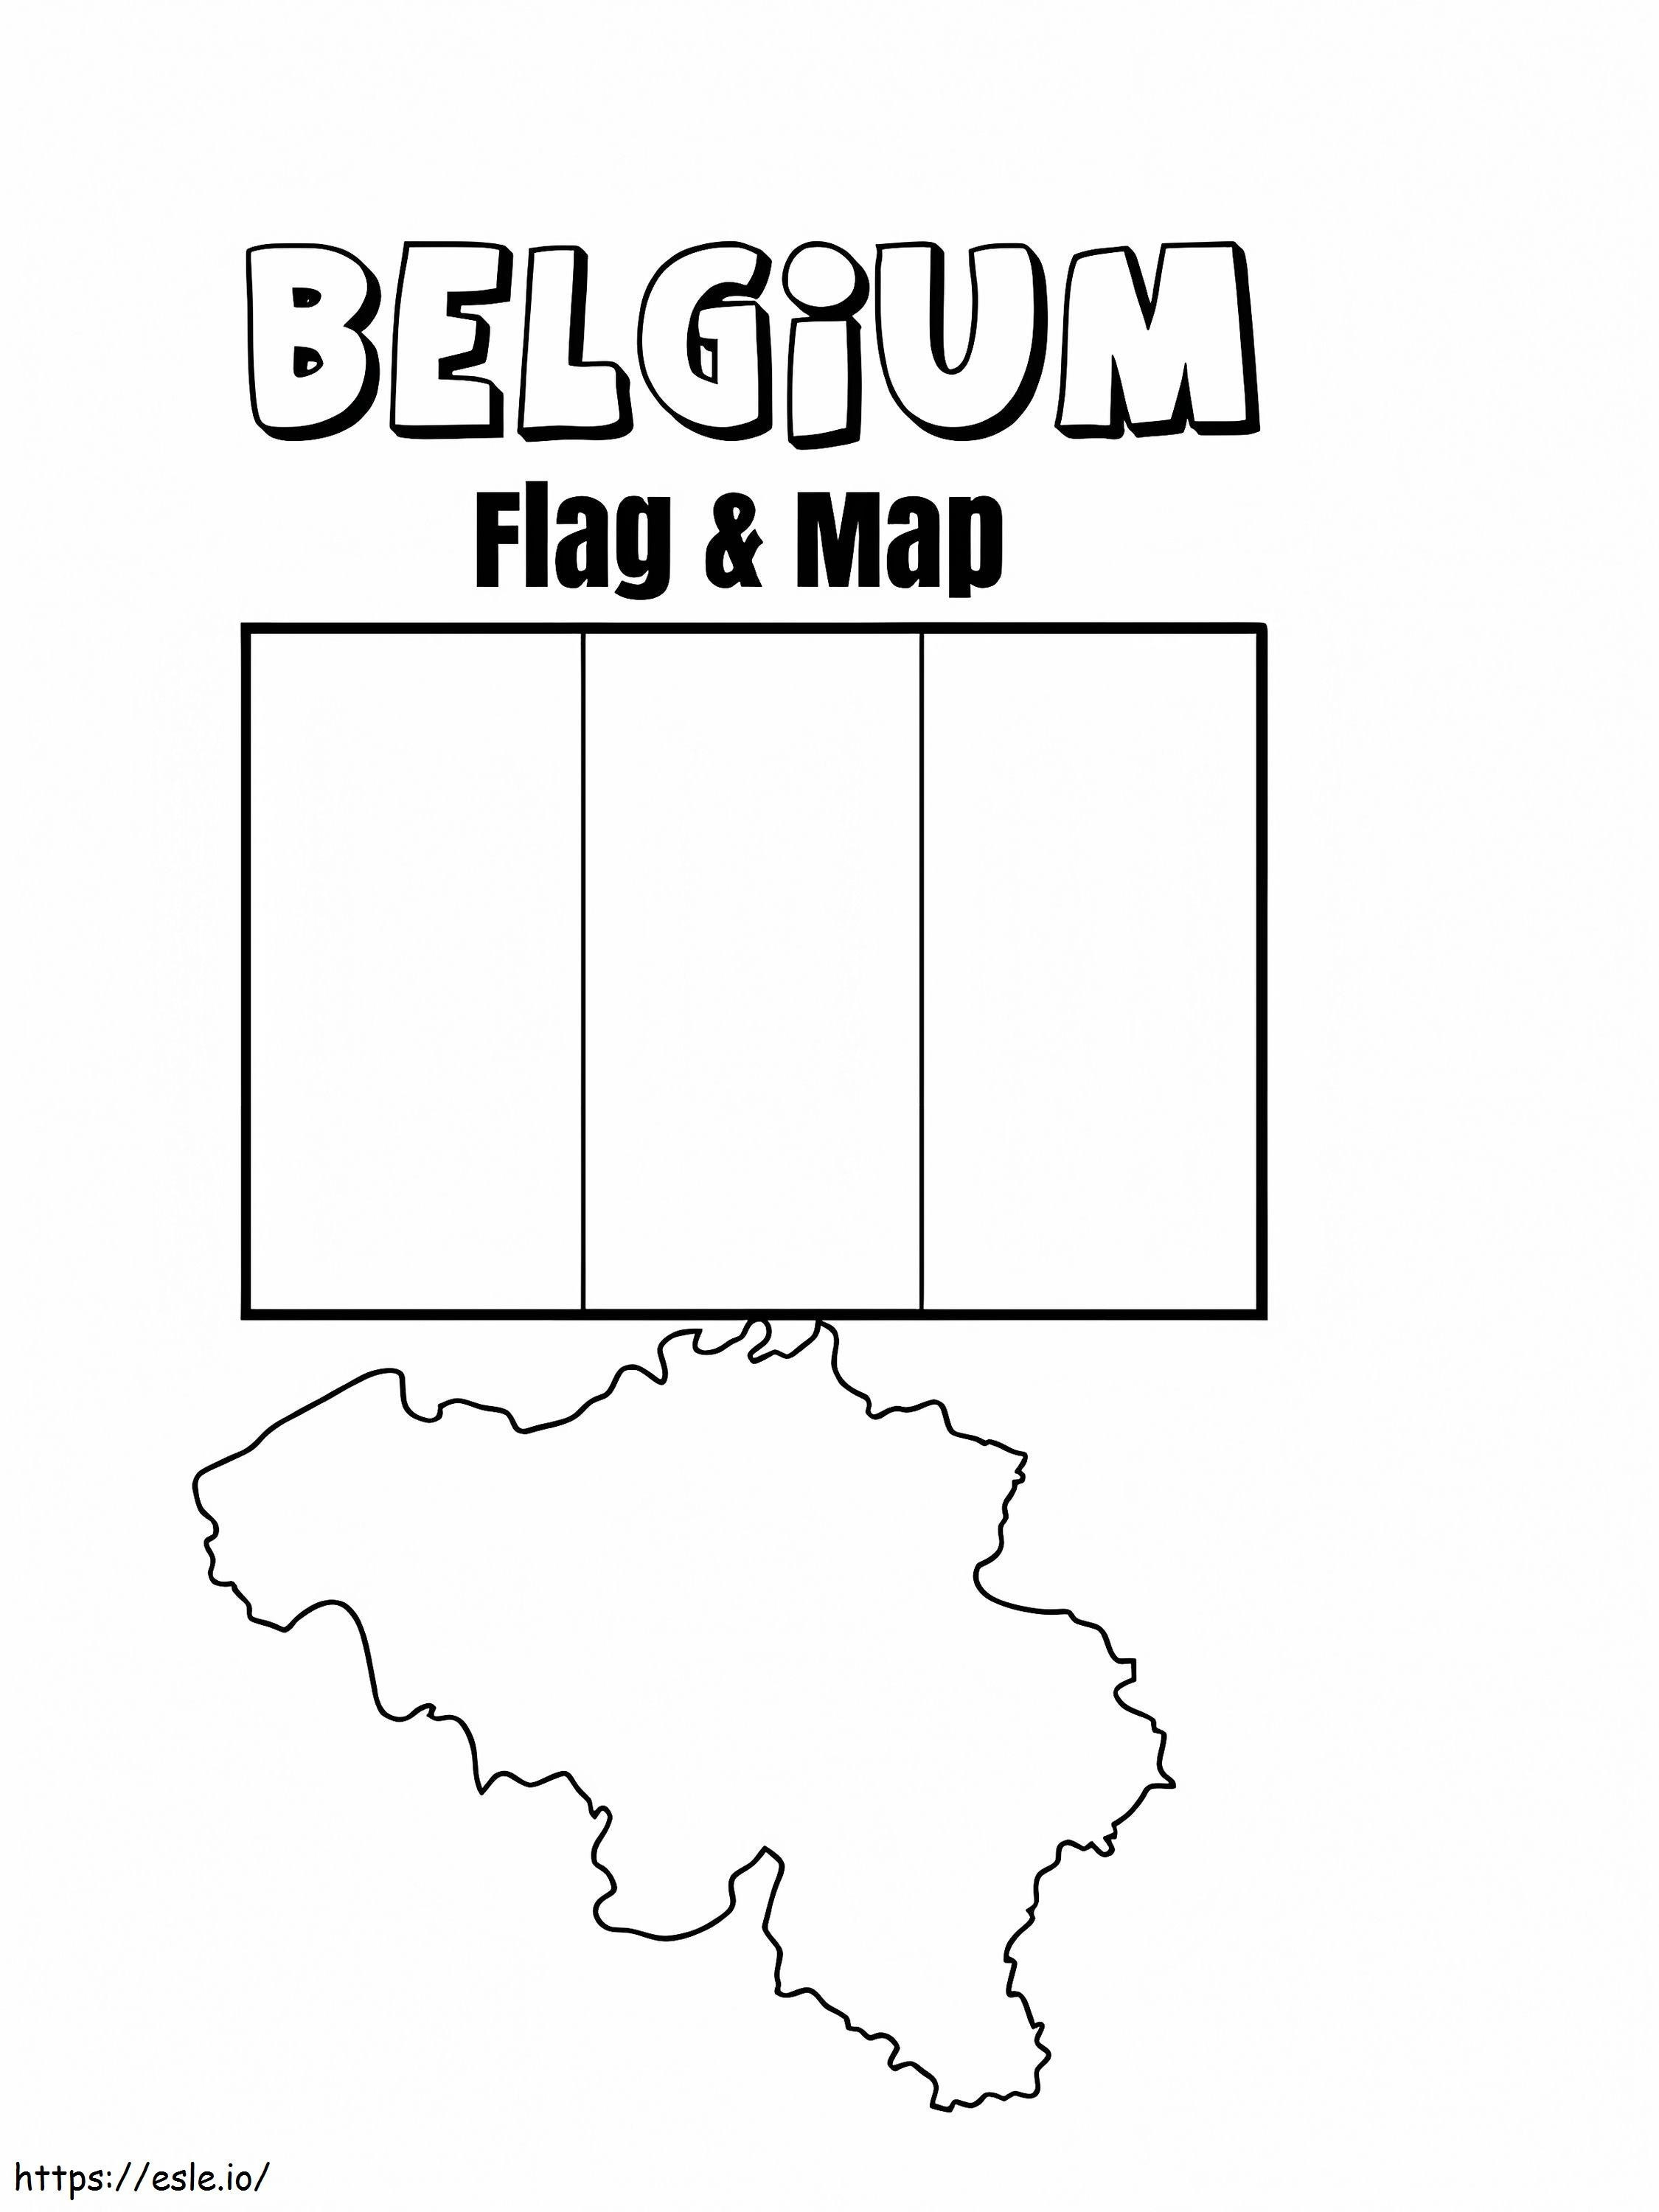 Mapa y bandera de Bélgica para colorear